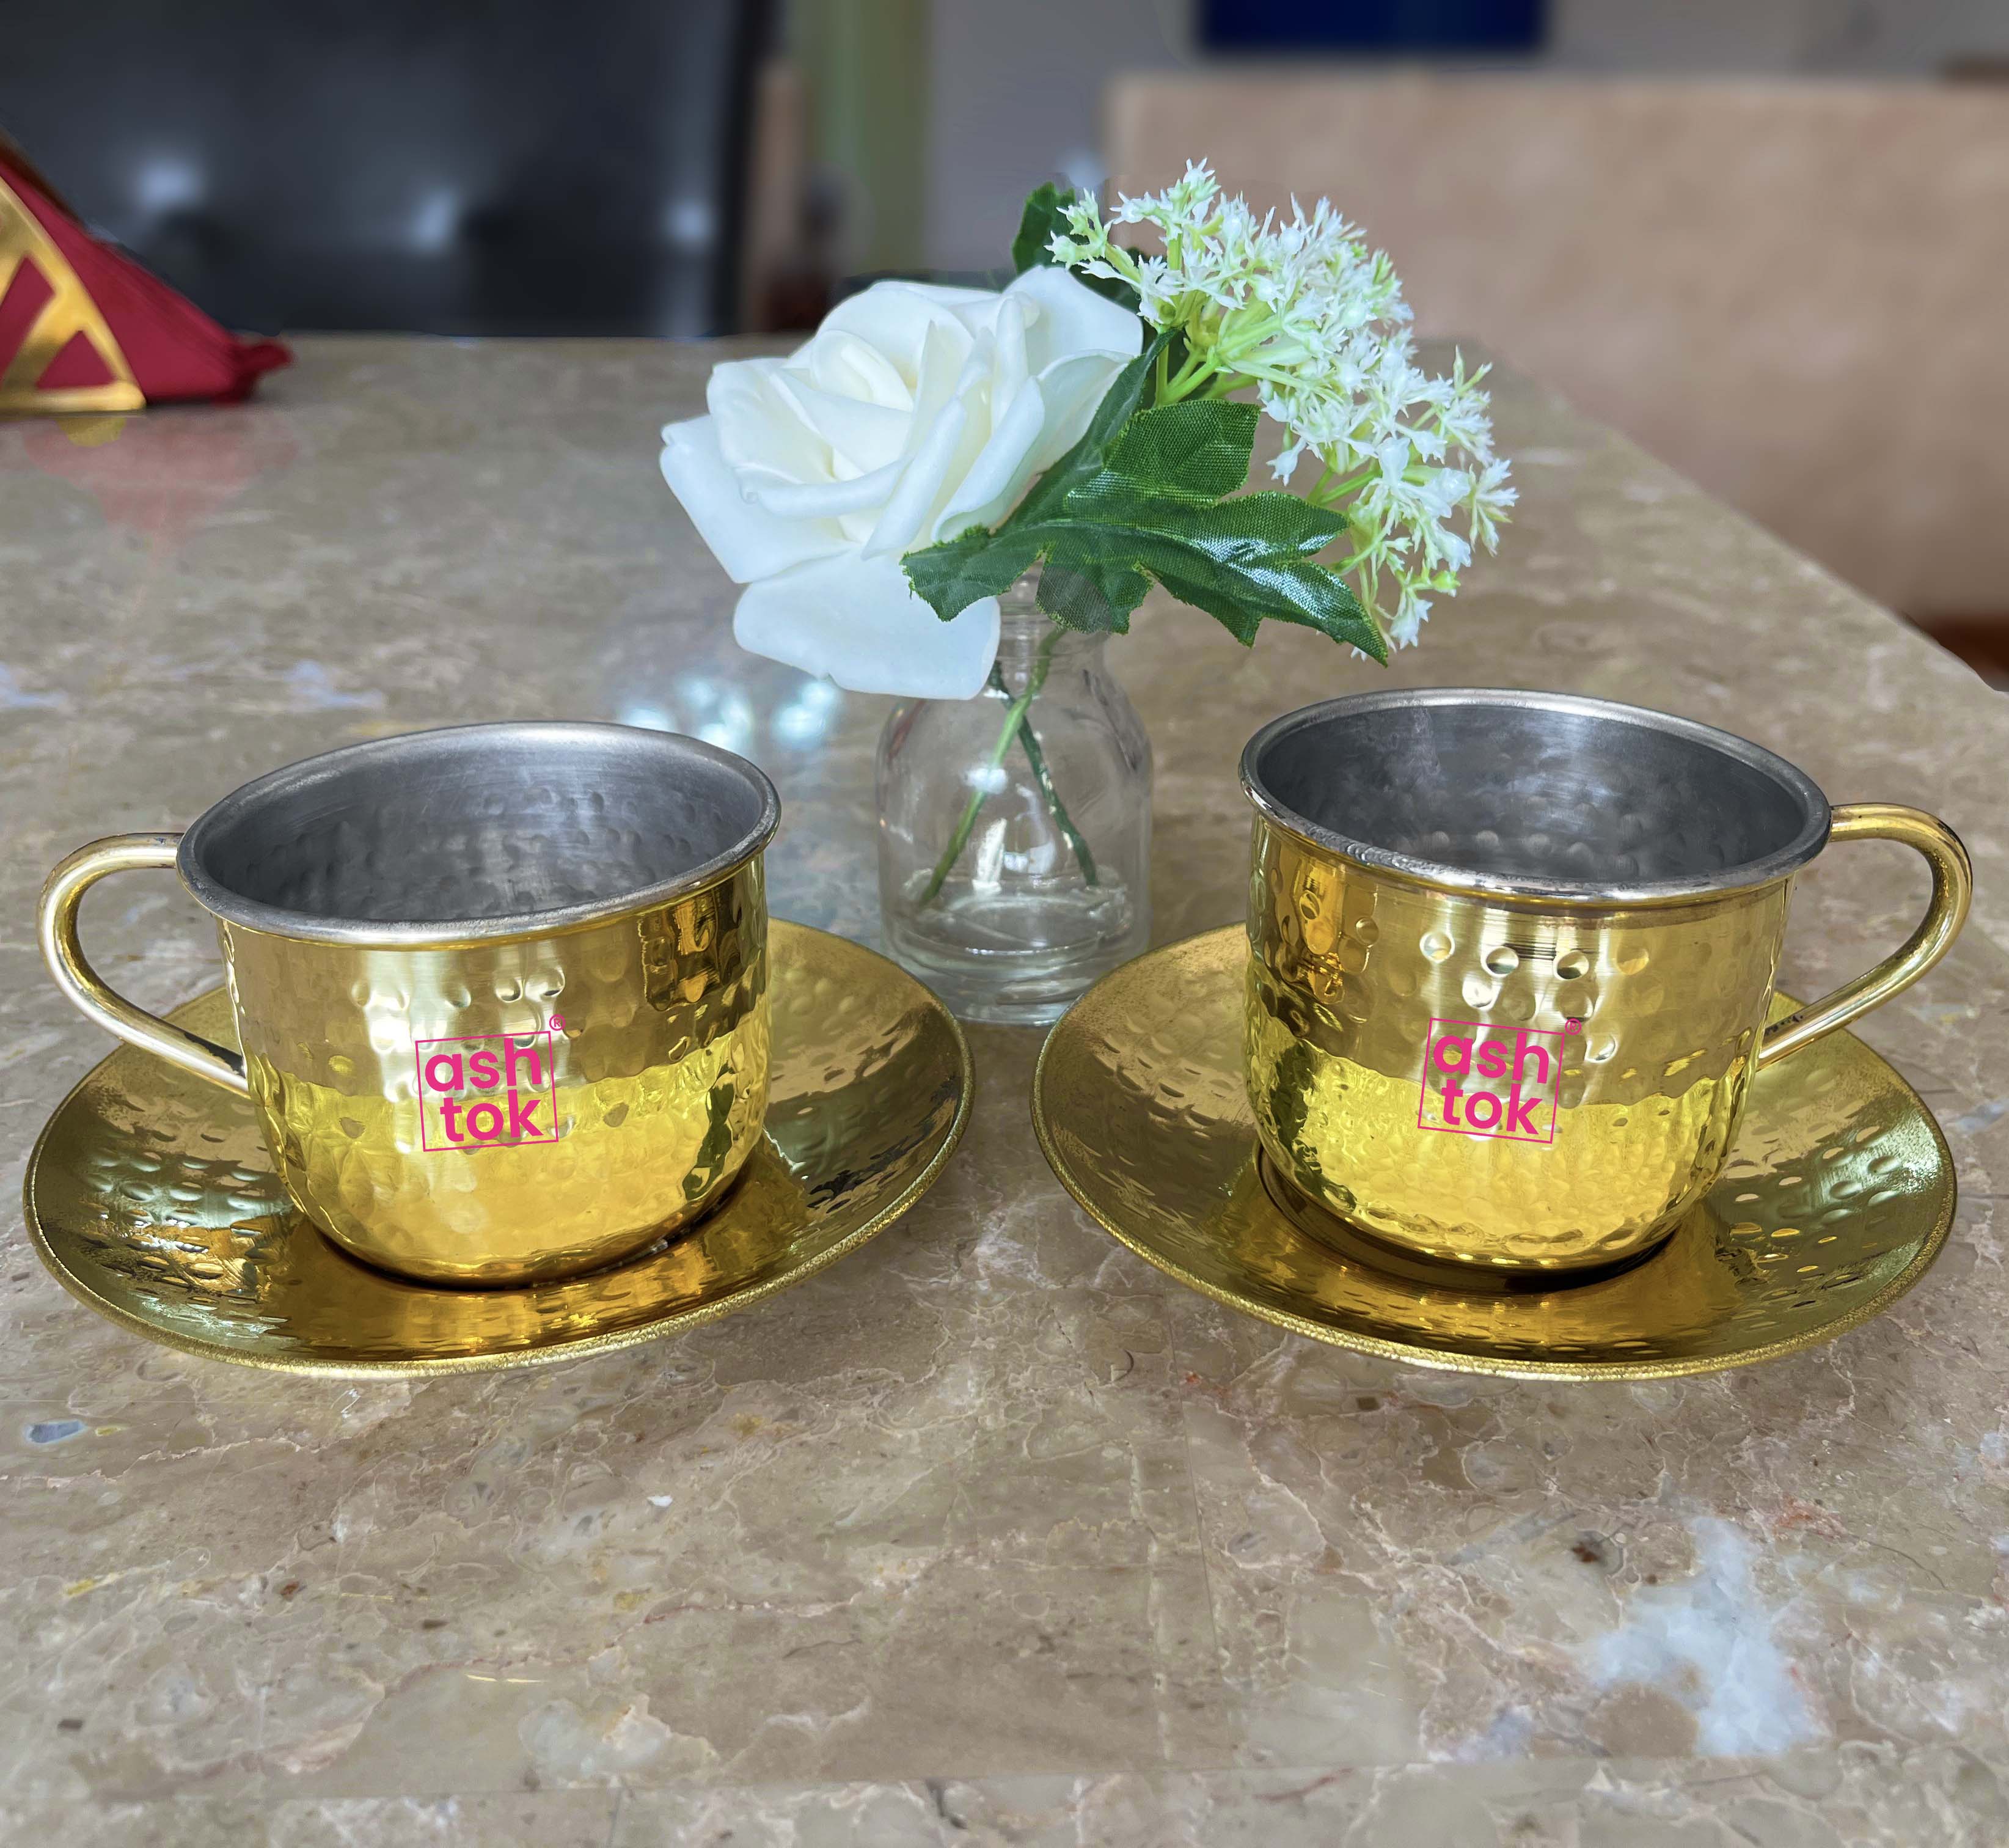 Handmade Brass Tea Cup and Saucer Set ot 1 (200 ml)